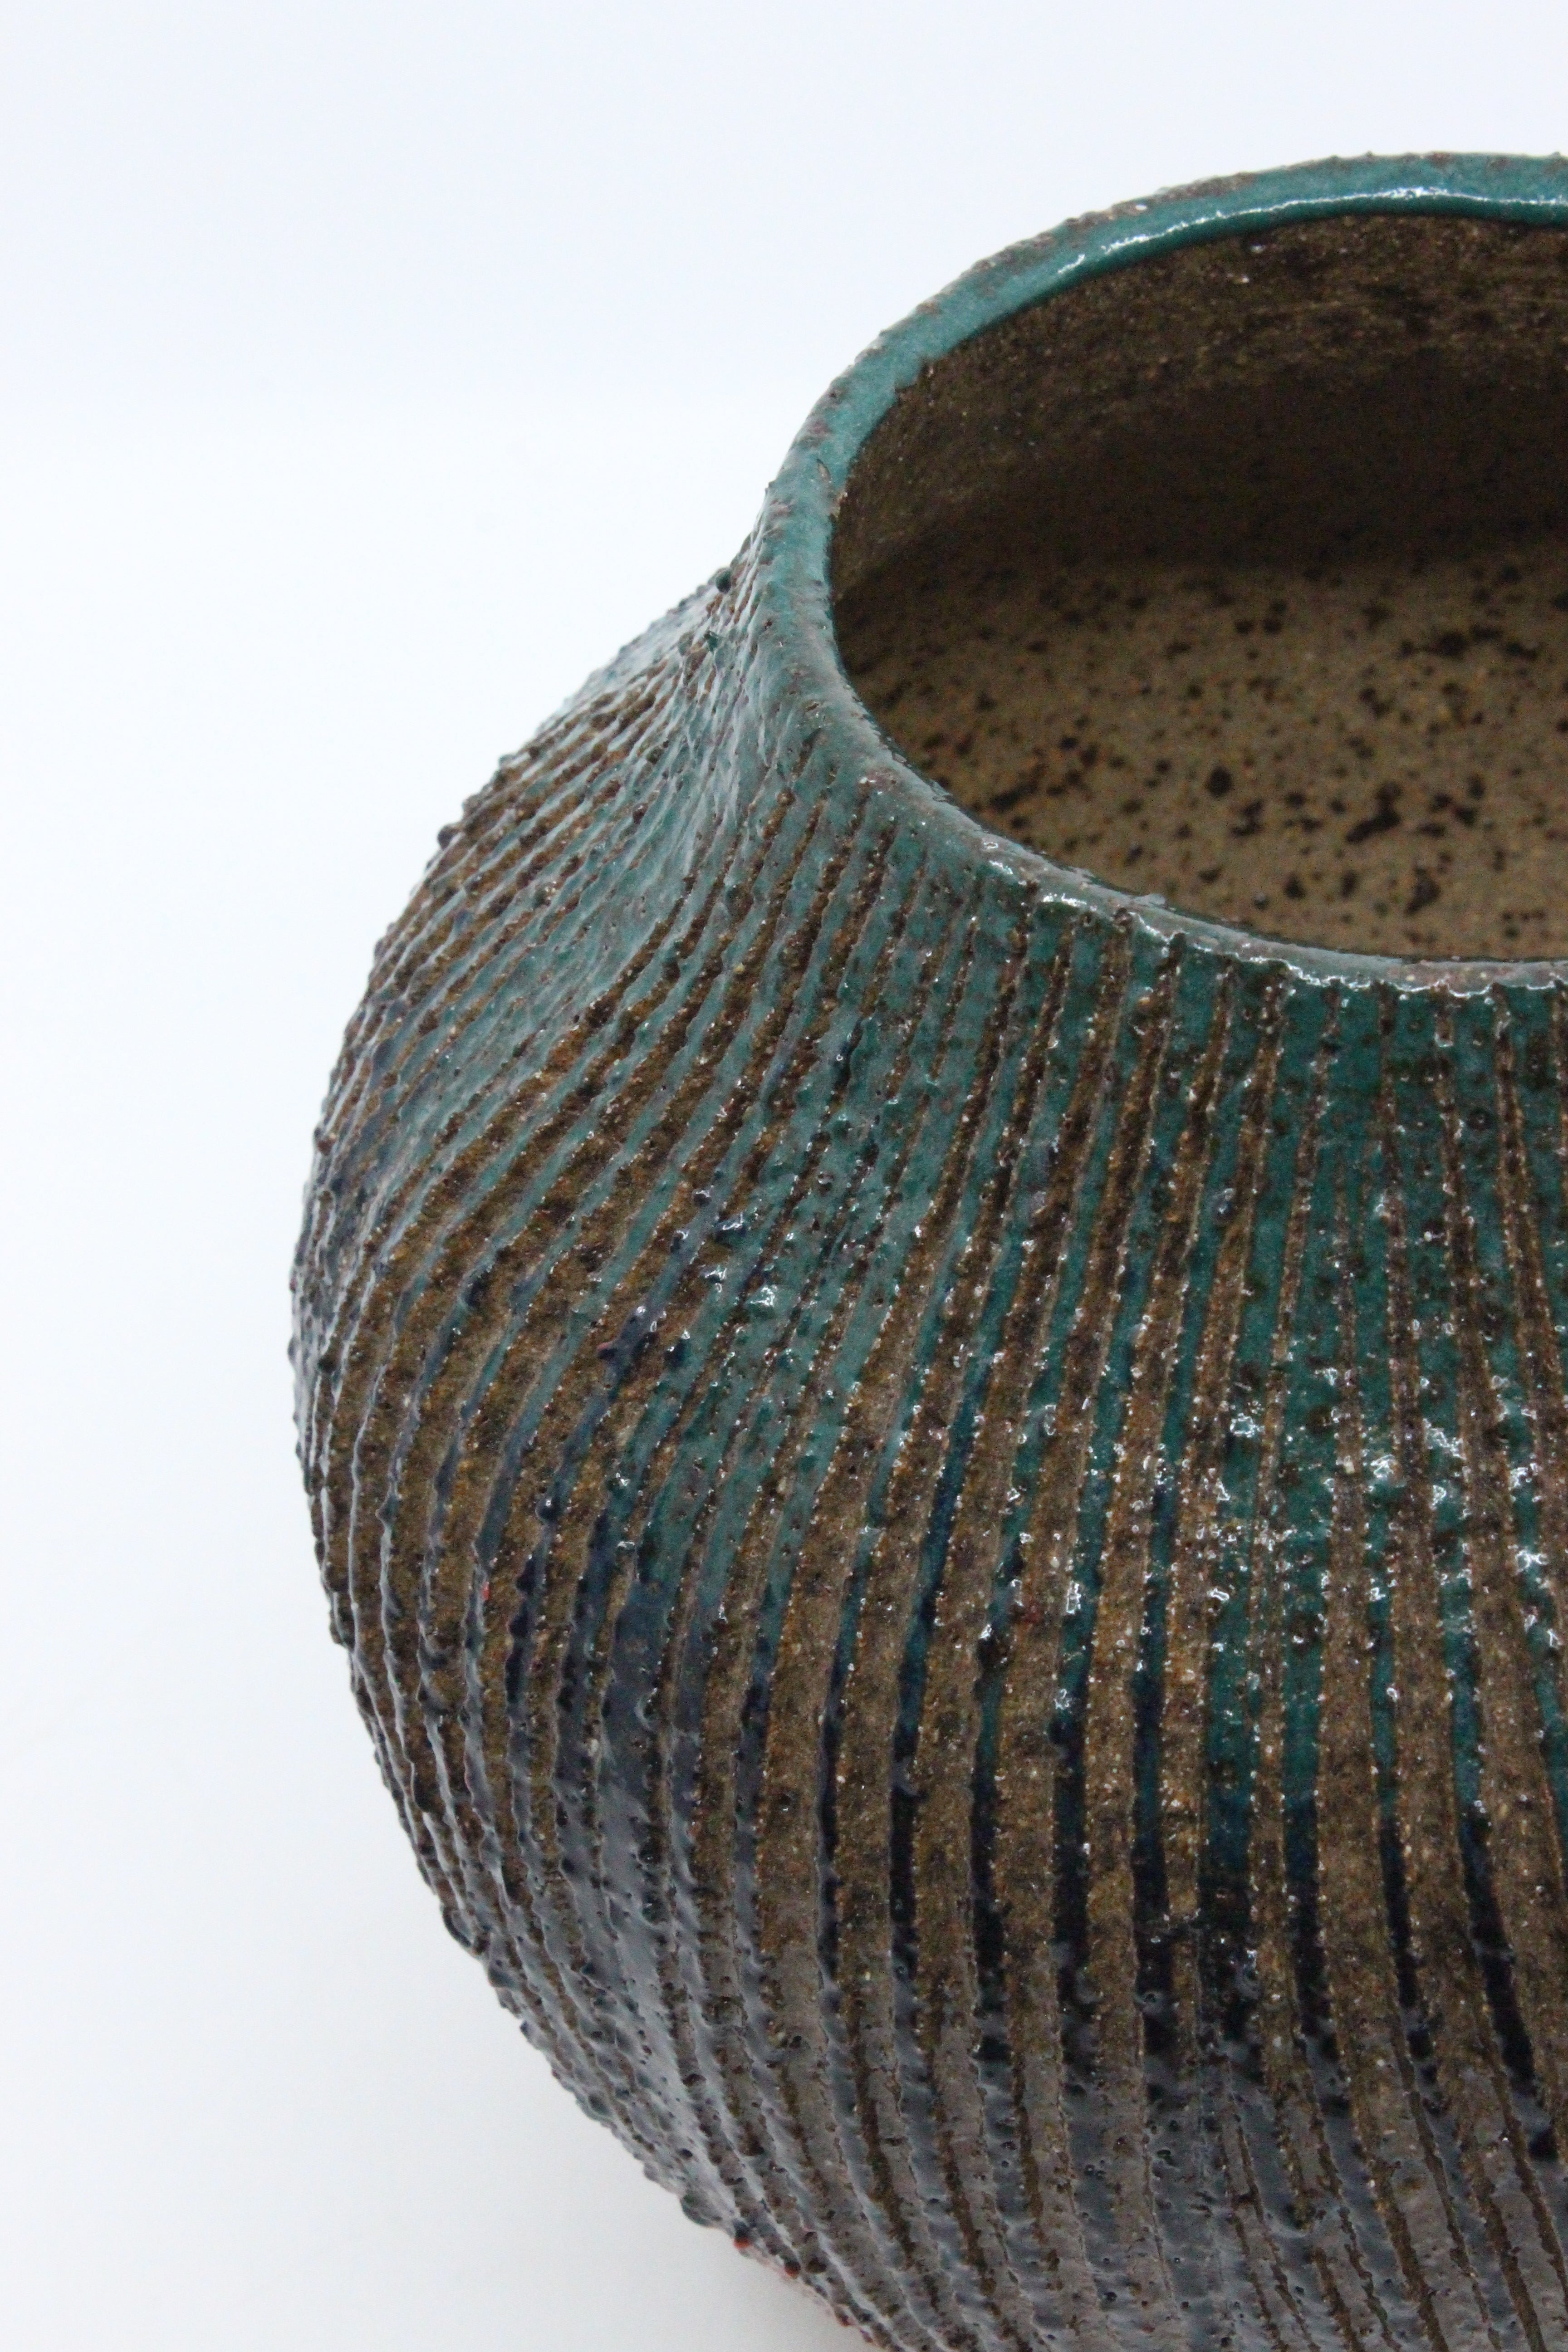 Textured Twist Vase - Large